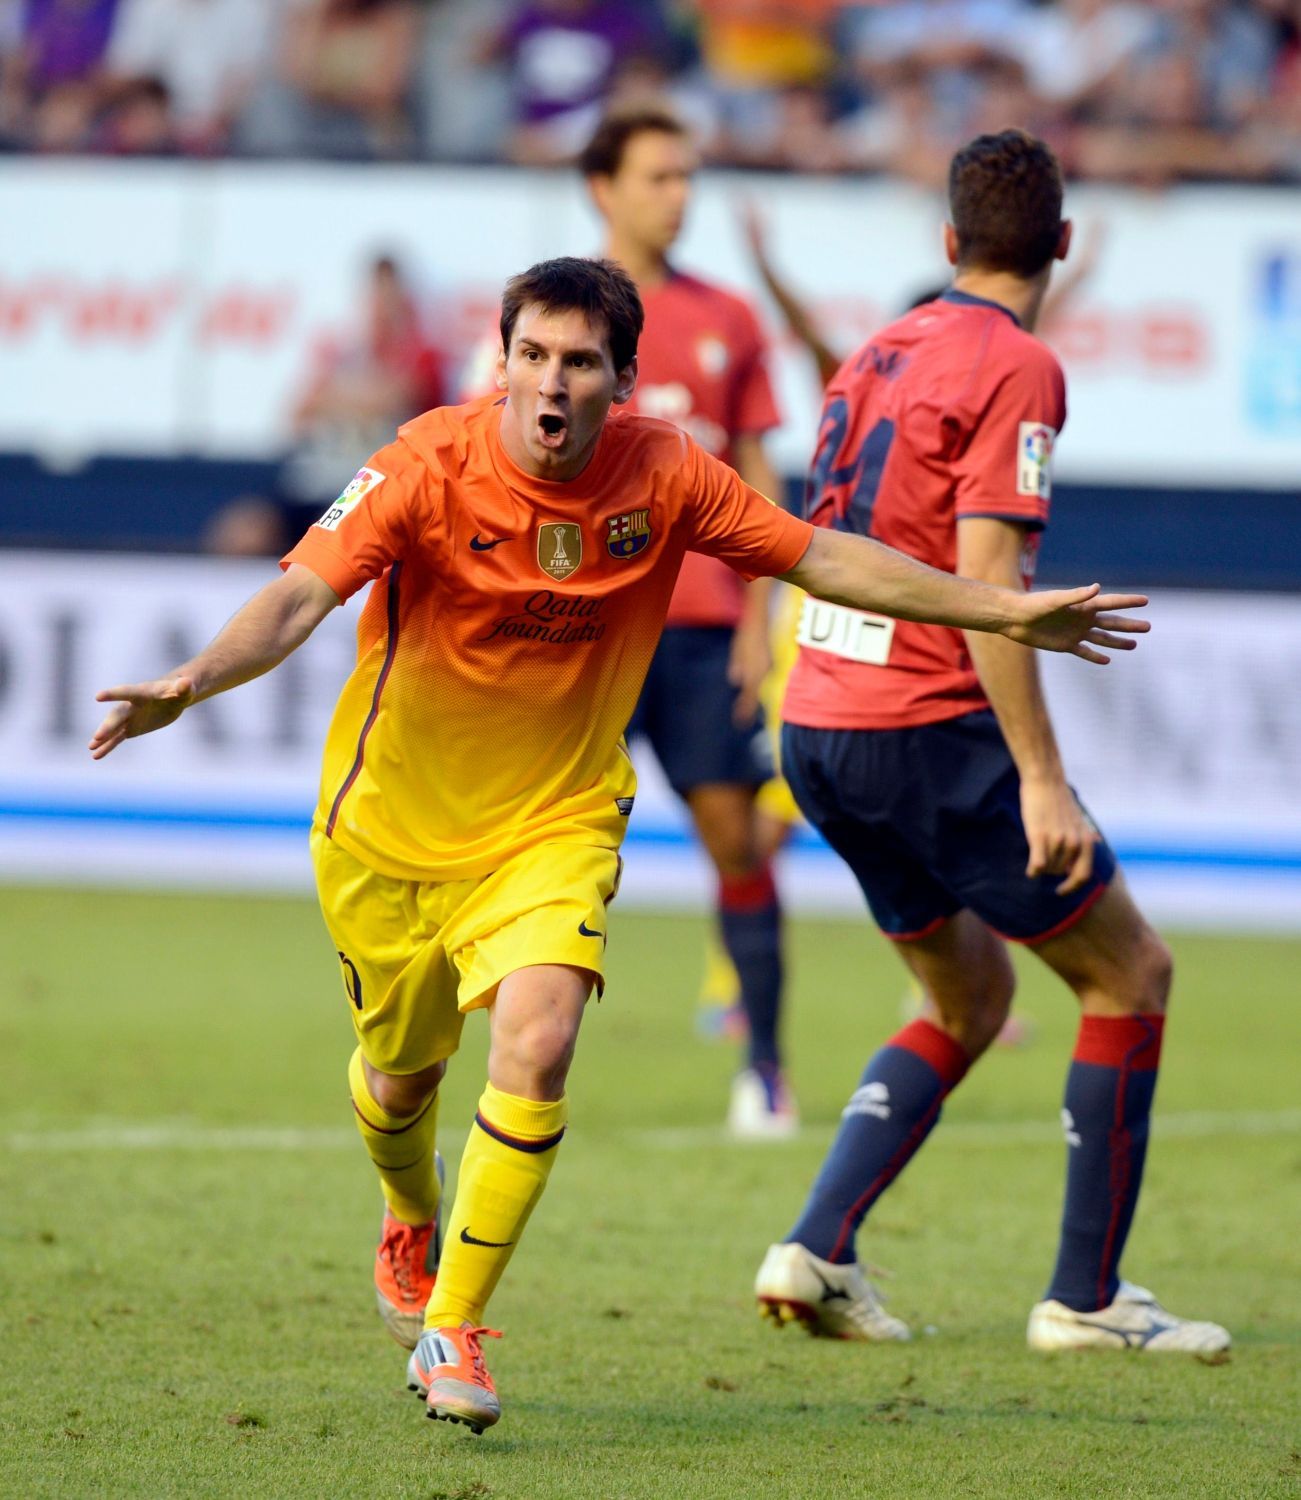 Fotbalista Barcelony Lionel Messi slaví gól v utkání La Ligy 2012/13 s Osasunou.